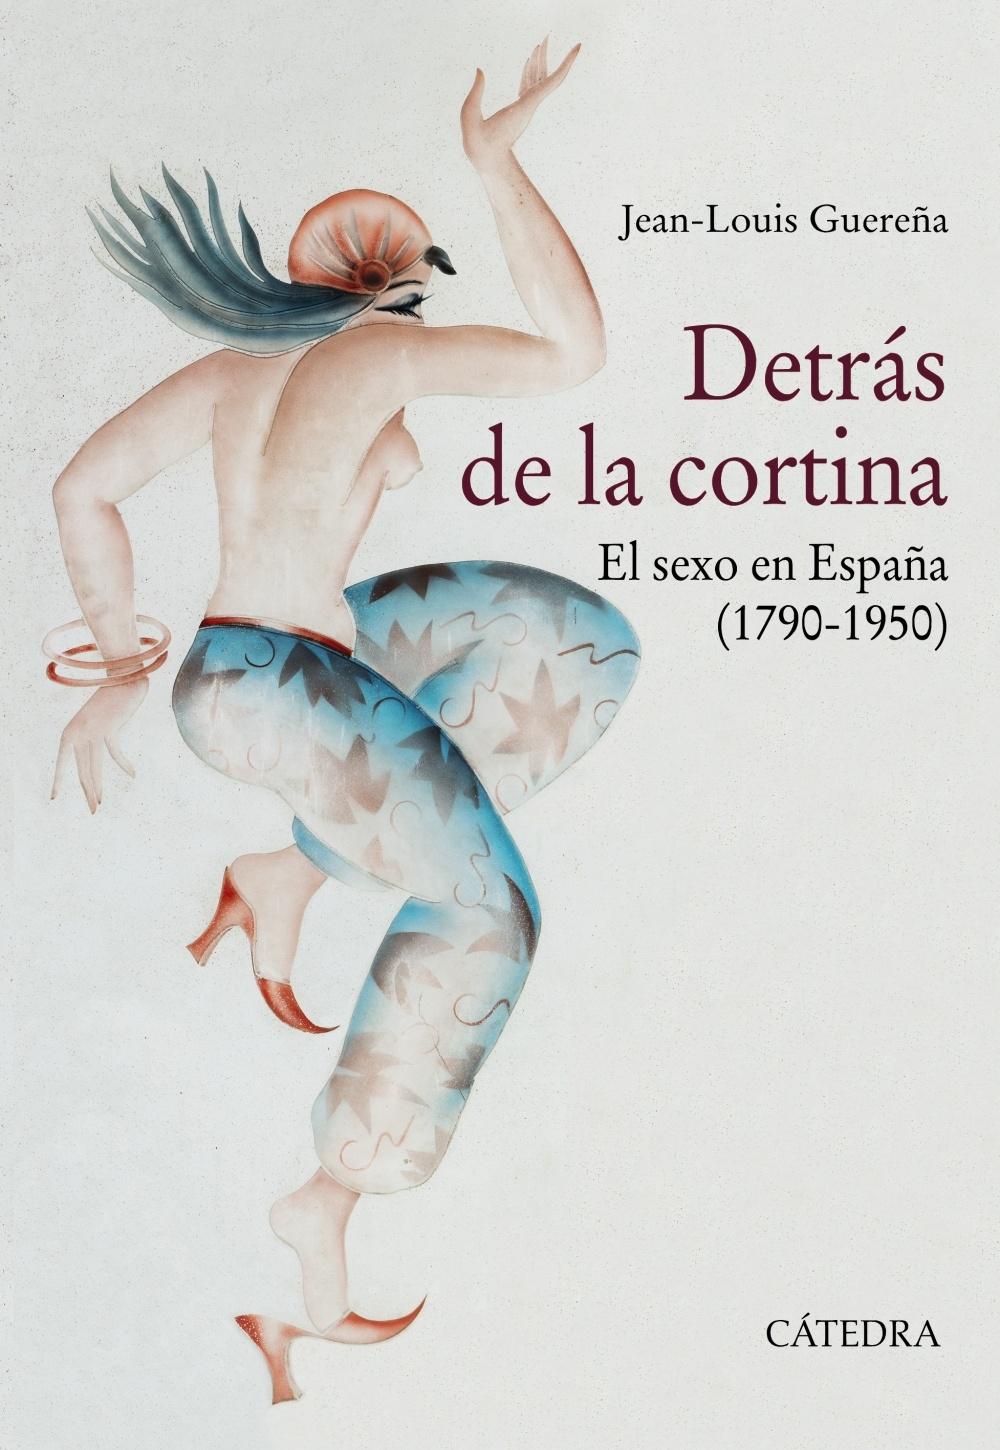 DETRÁS DE LA CORTINA "EL SEXO EN ESPAÑA (1790-1950)"